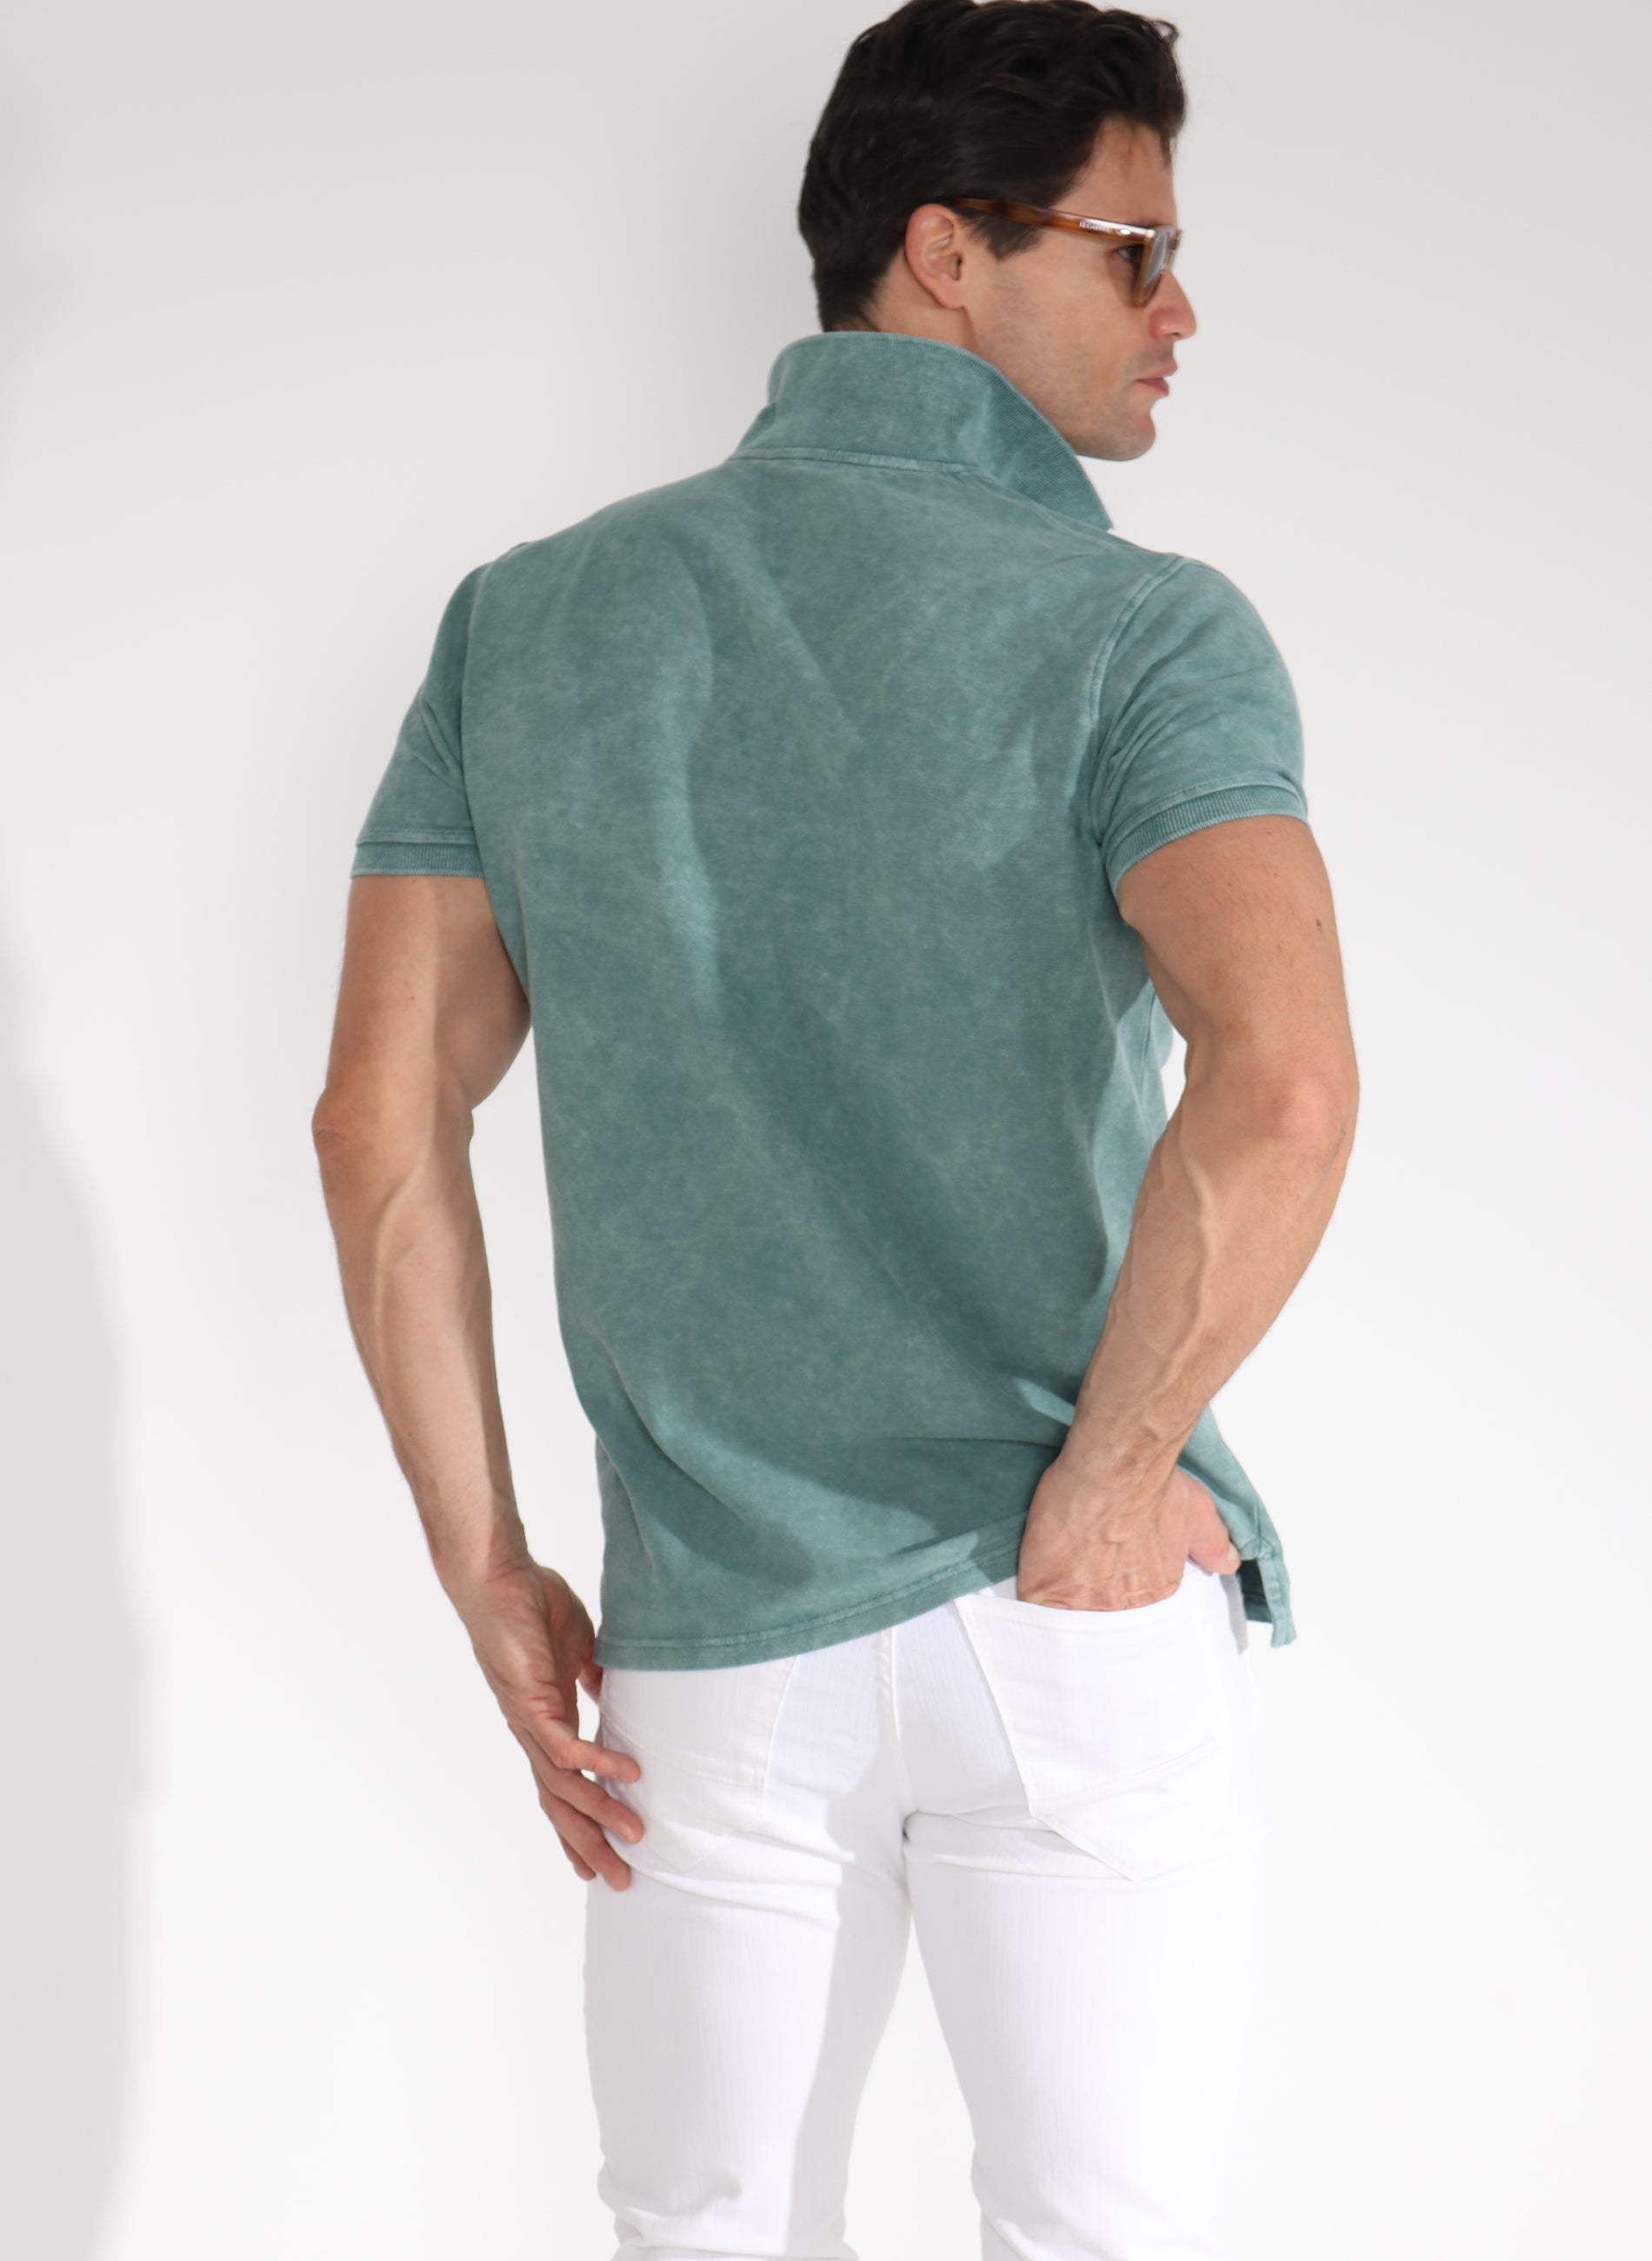 Polo Dye für Herren in grünem Kleidungsstück